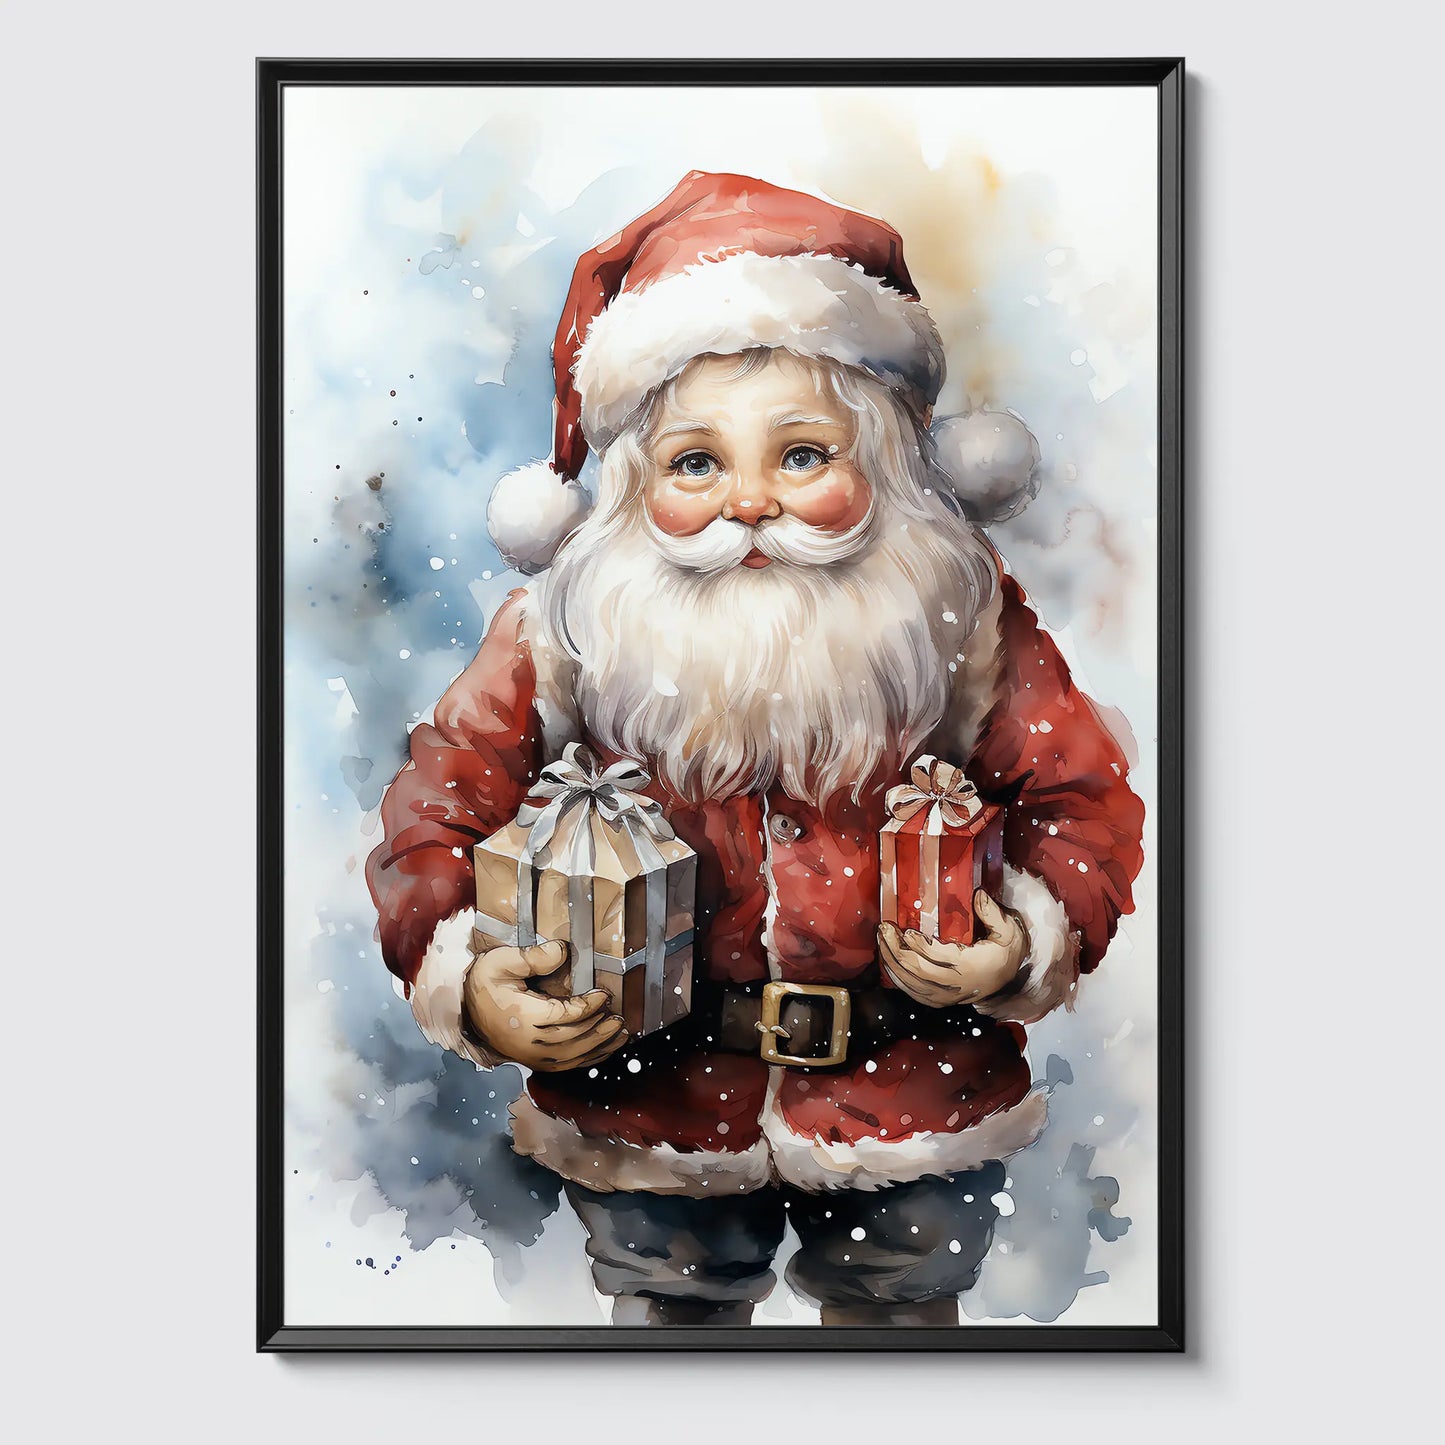 Weihnachtsmann No 9 - Weihnachten - Santa Claus - Poster